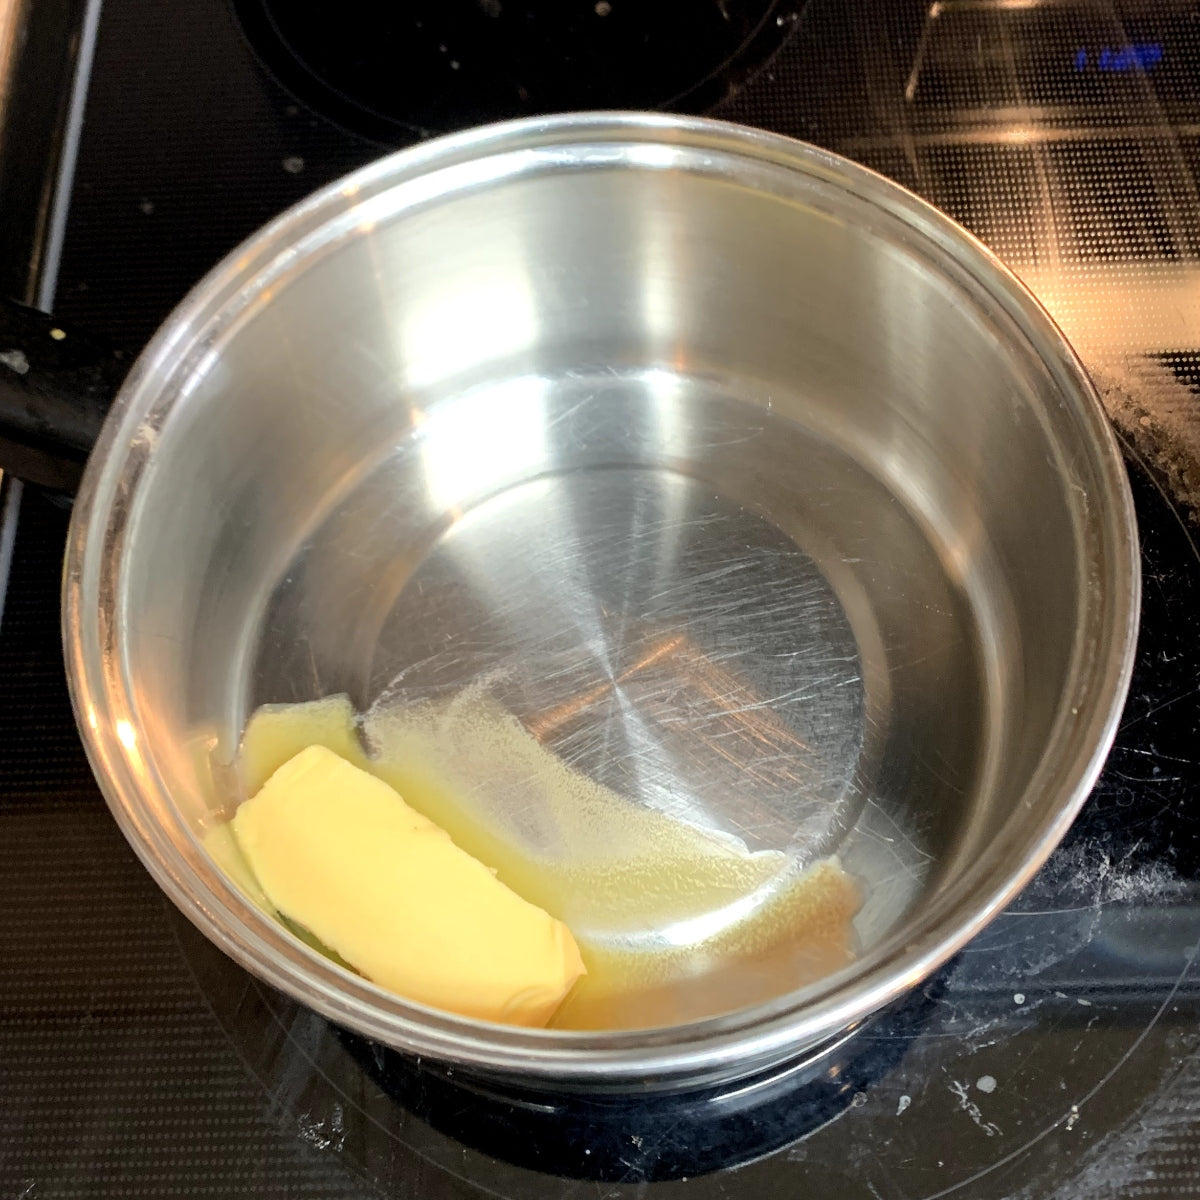 Butter melting in a saucepan.